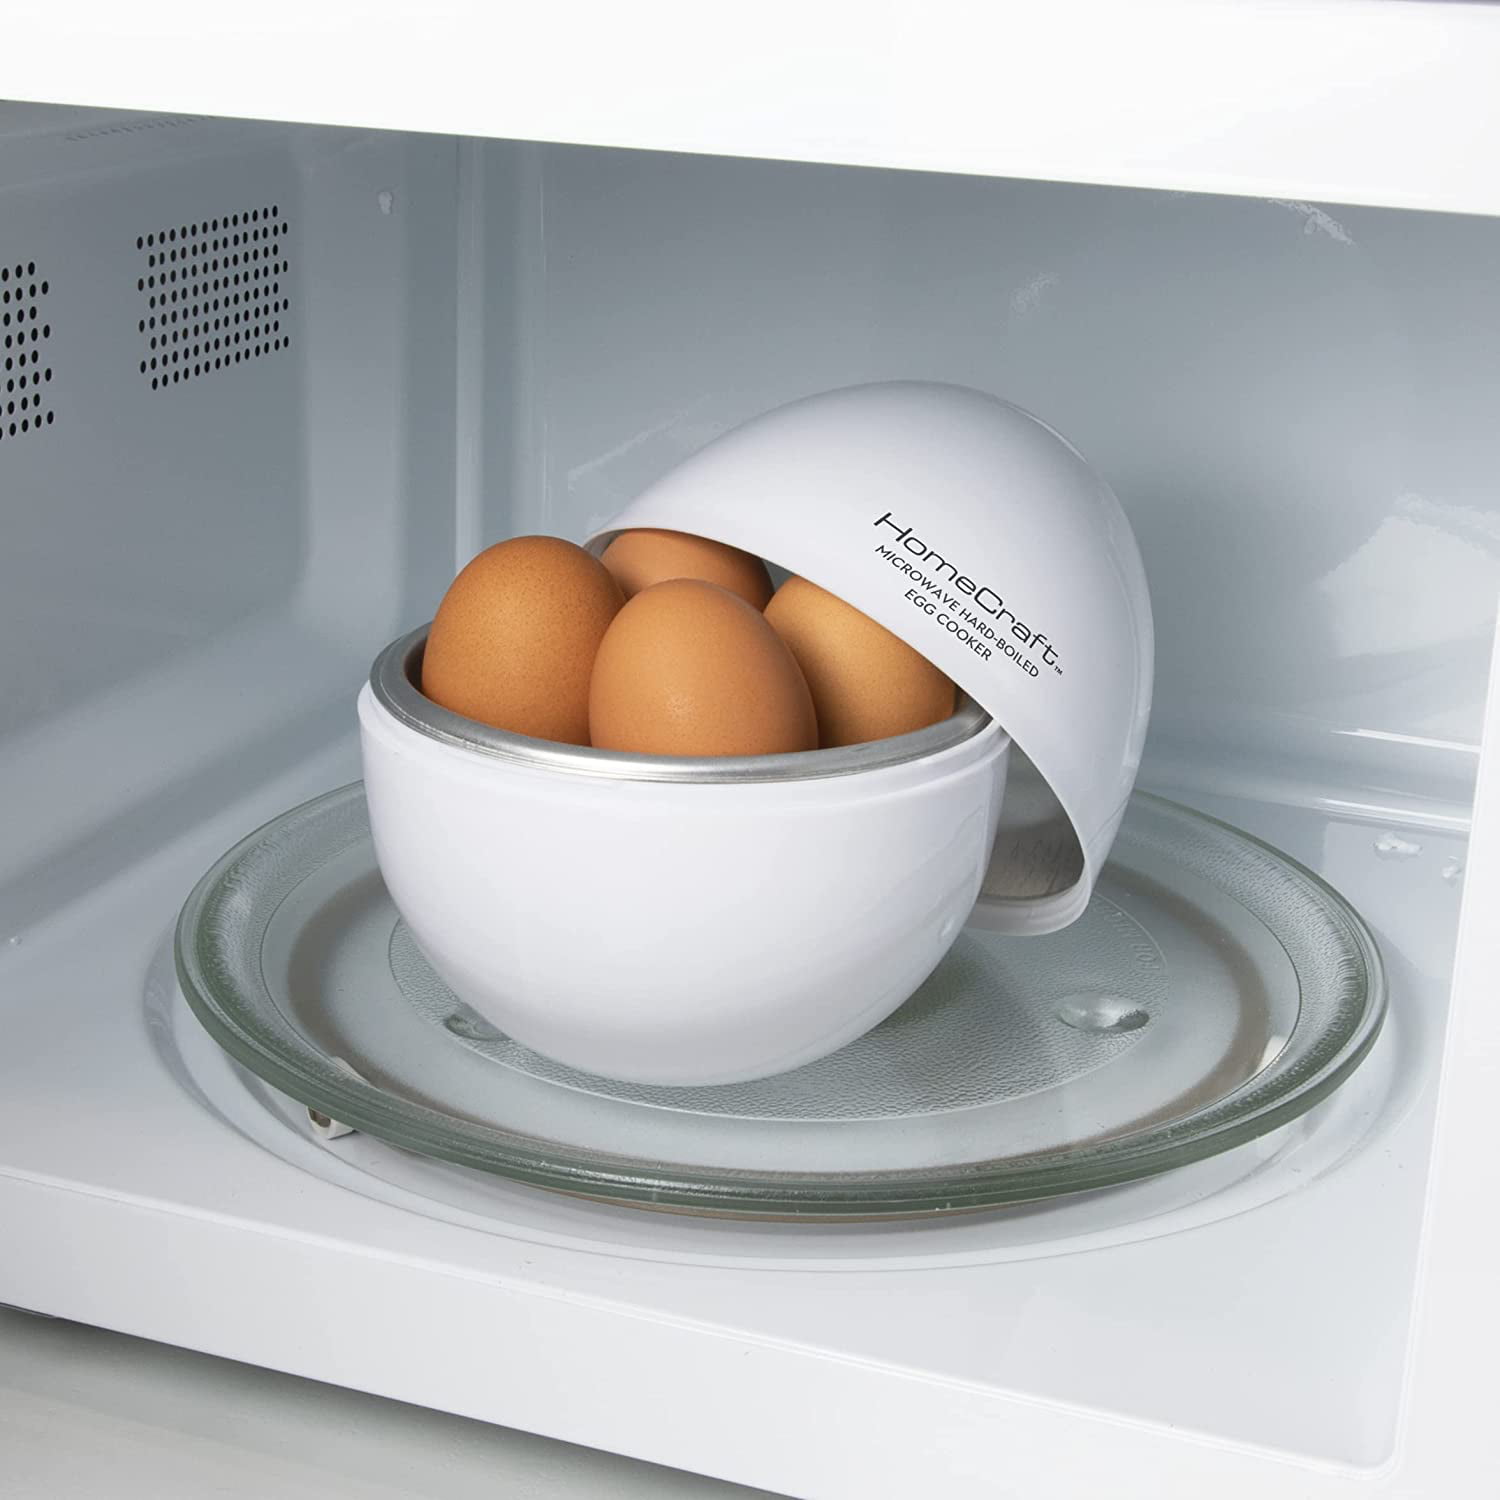 Homecraft Microwave Hard Boiled Egg Cooker, 4 Hard Boiled Eggs